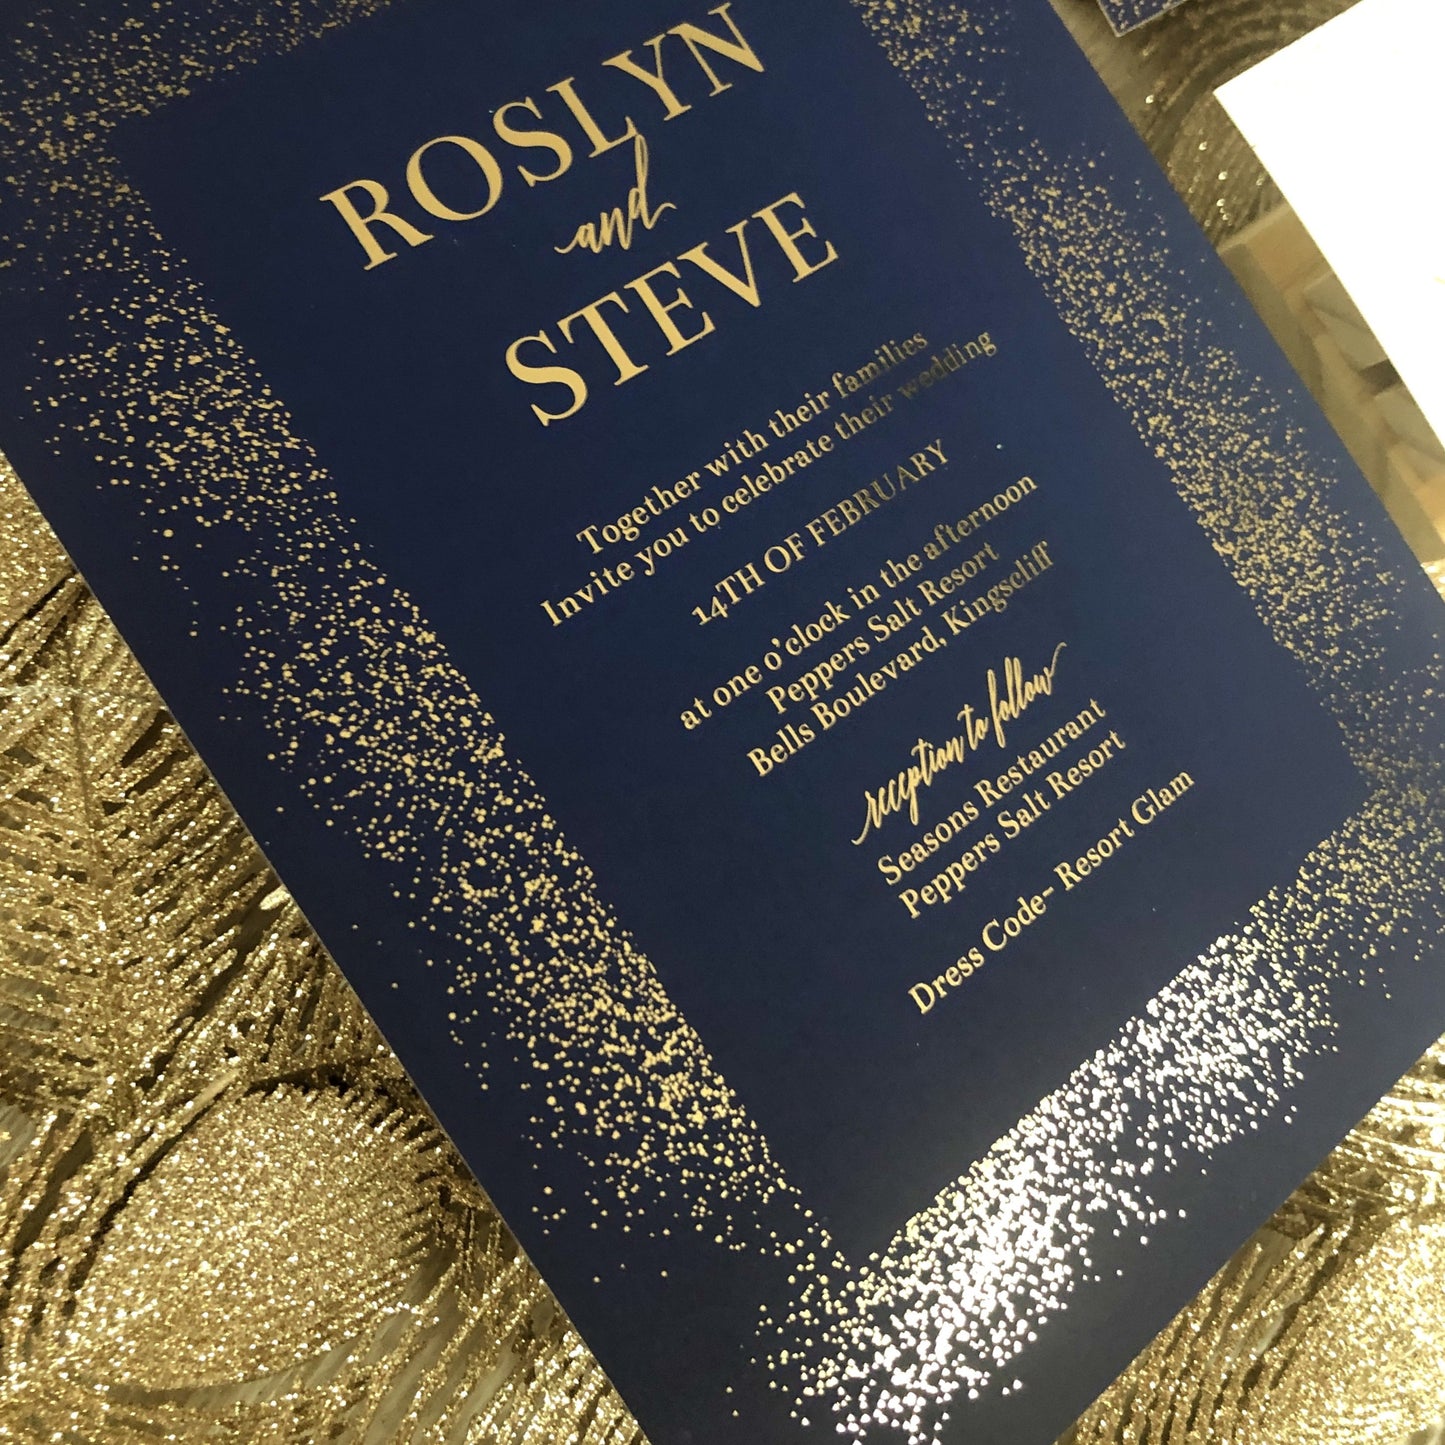 "Rosyln" Navy and Gold Foil Glitter Confetti Wedding Invitation - Glitzy Prints